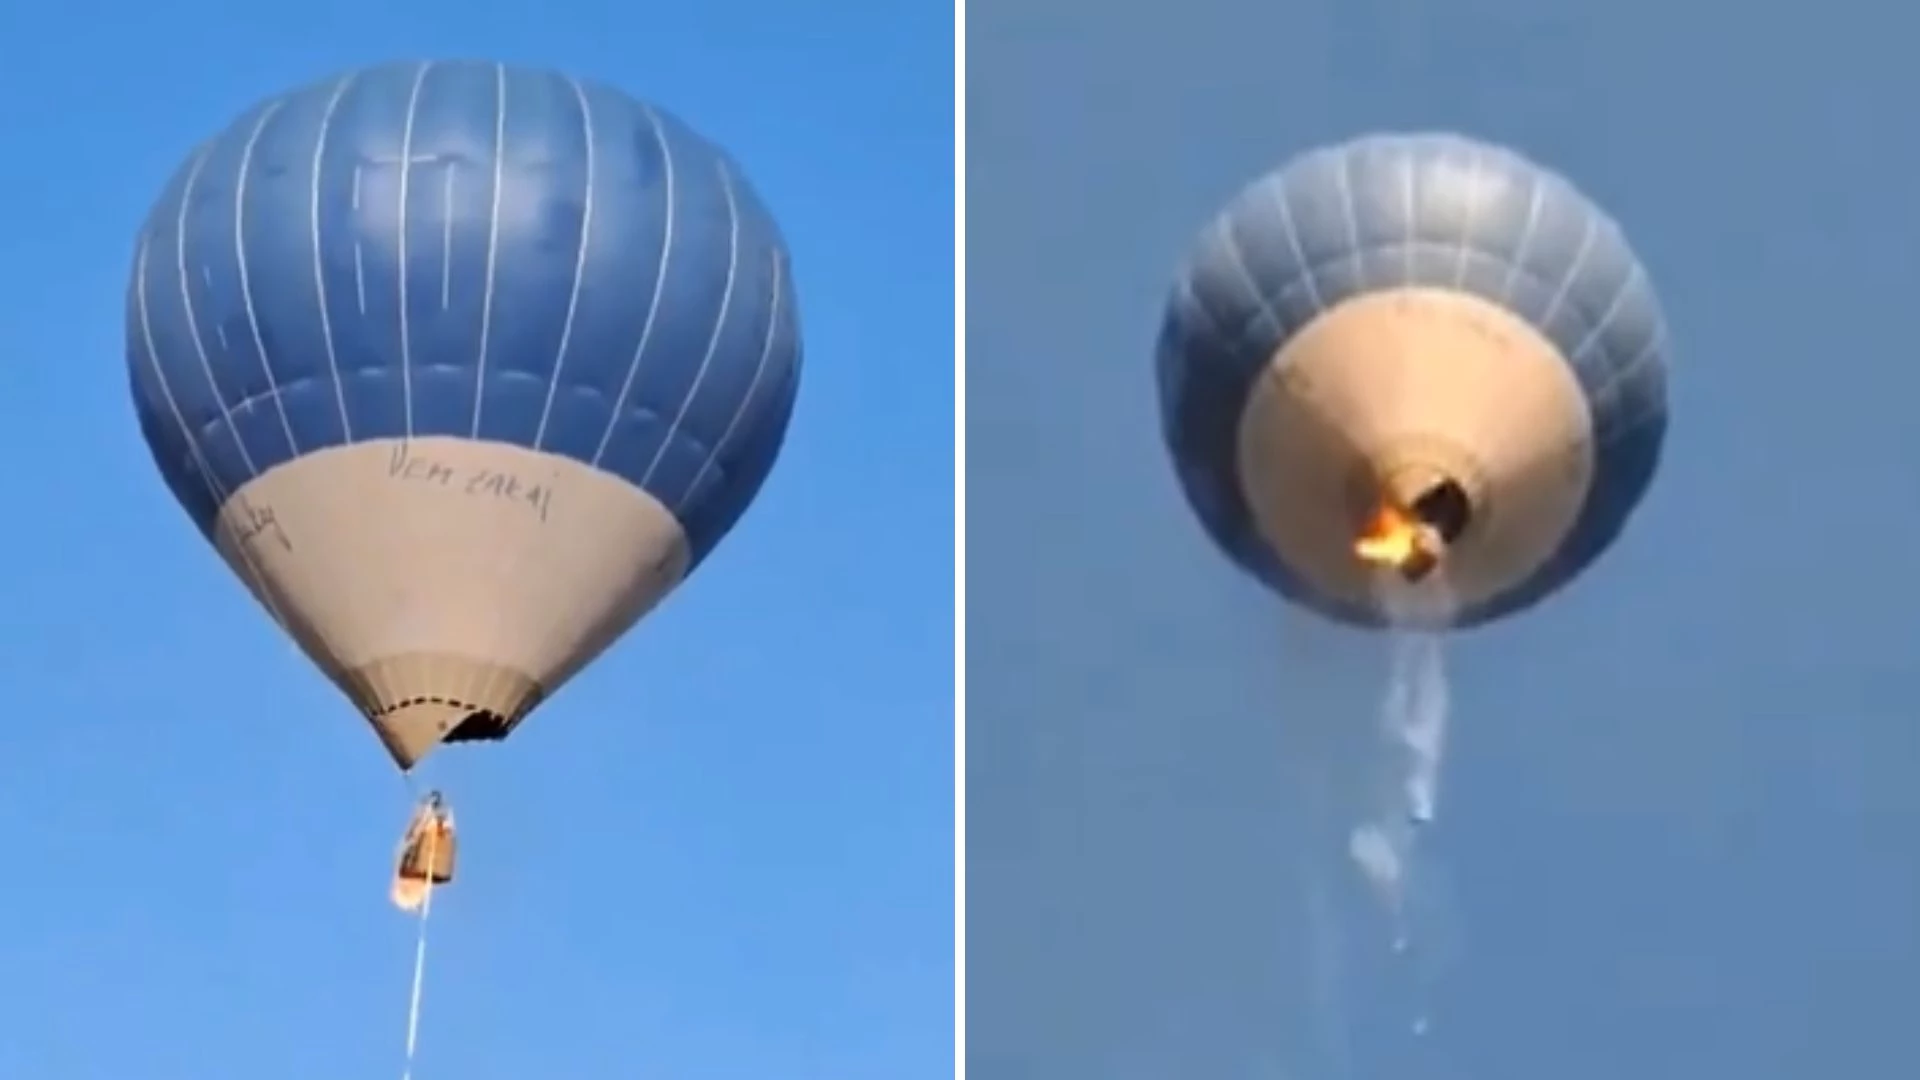 Incêndio em balão mata casal; filha sobrevive ao decidir pularPasseio era uma comemoração ao aniversário de um dos ocupantes